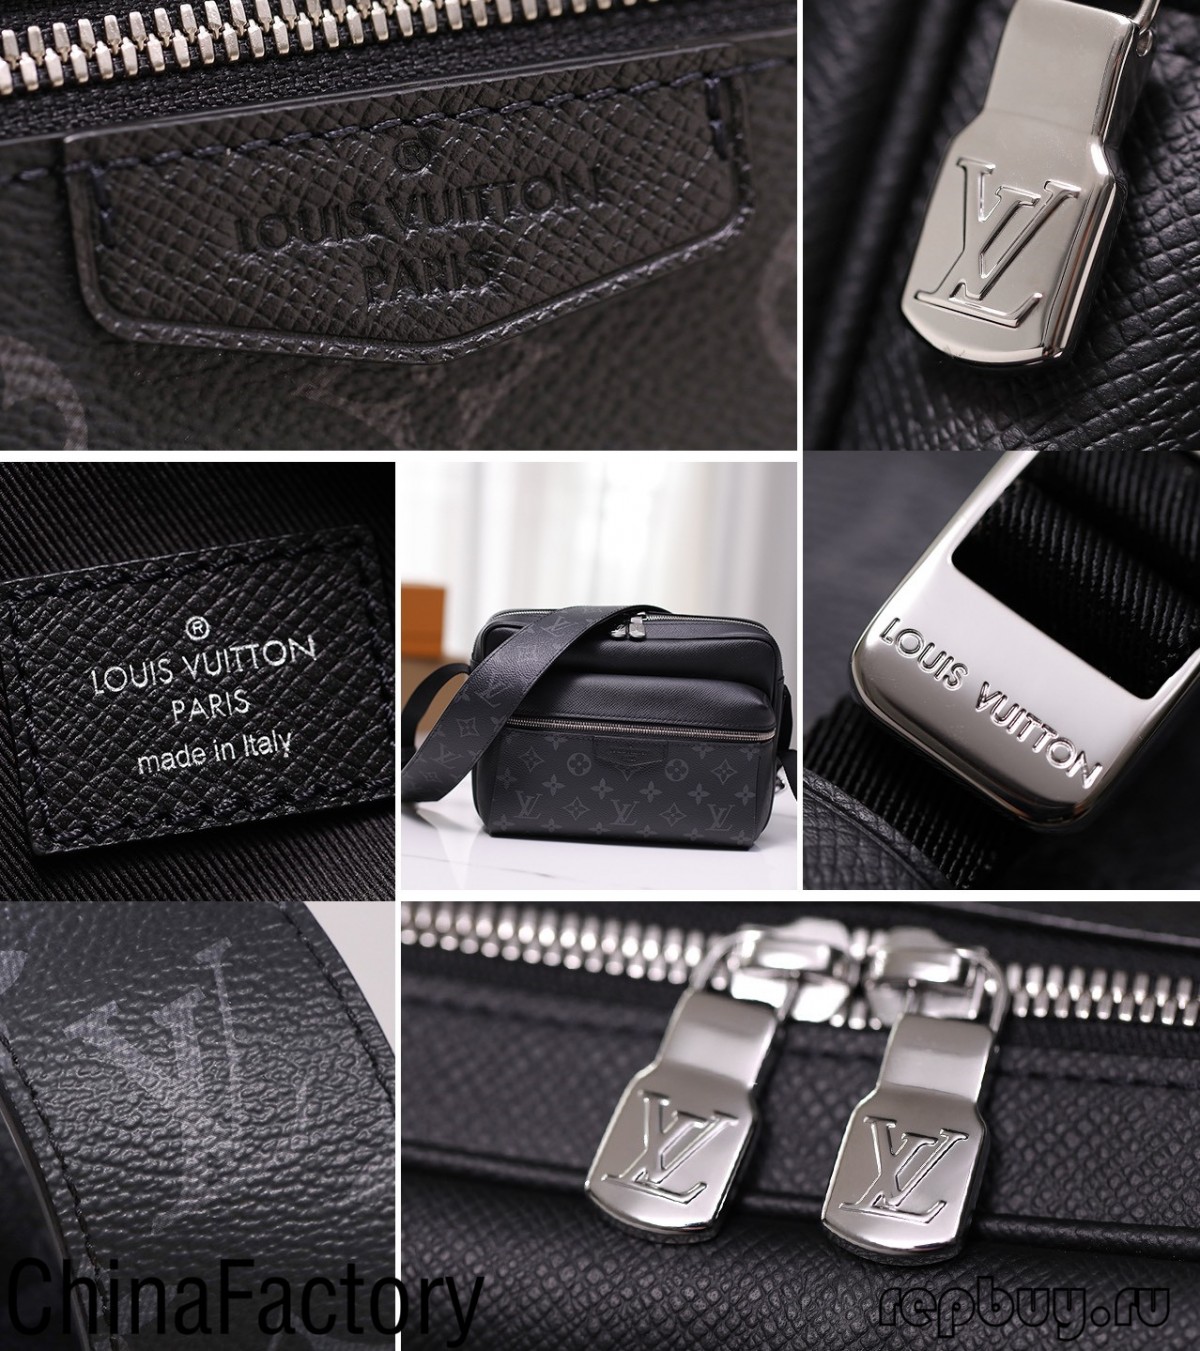 Къде мога да купя най-добрите луксозни чанти реплики? (Издание 2022) - Онлайн магазин за фалшива чанта Louis Vuitton с най-добро качество, дизайнерска чанта реплика ru